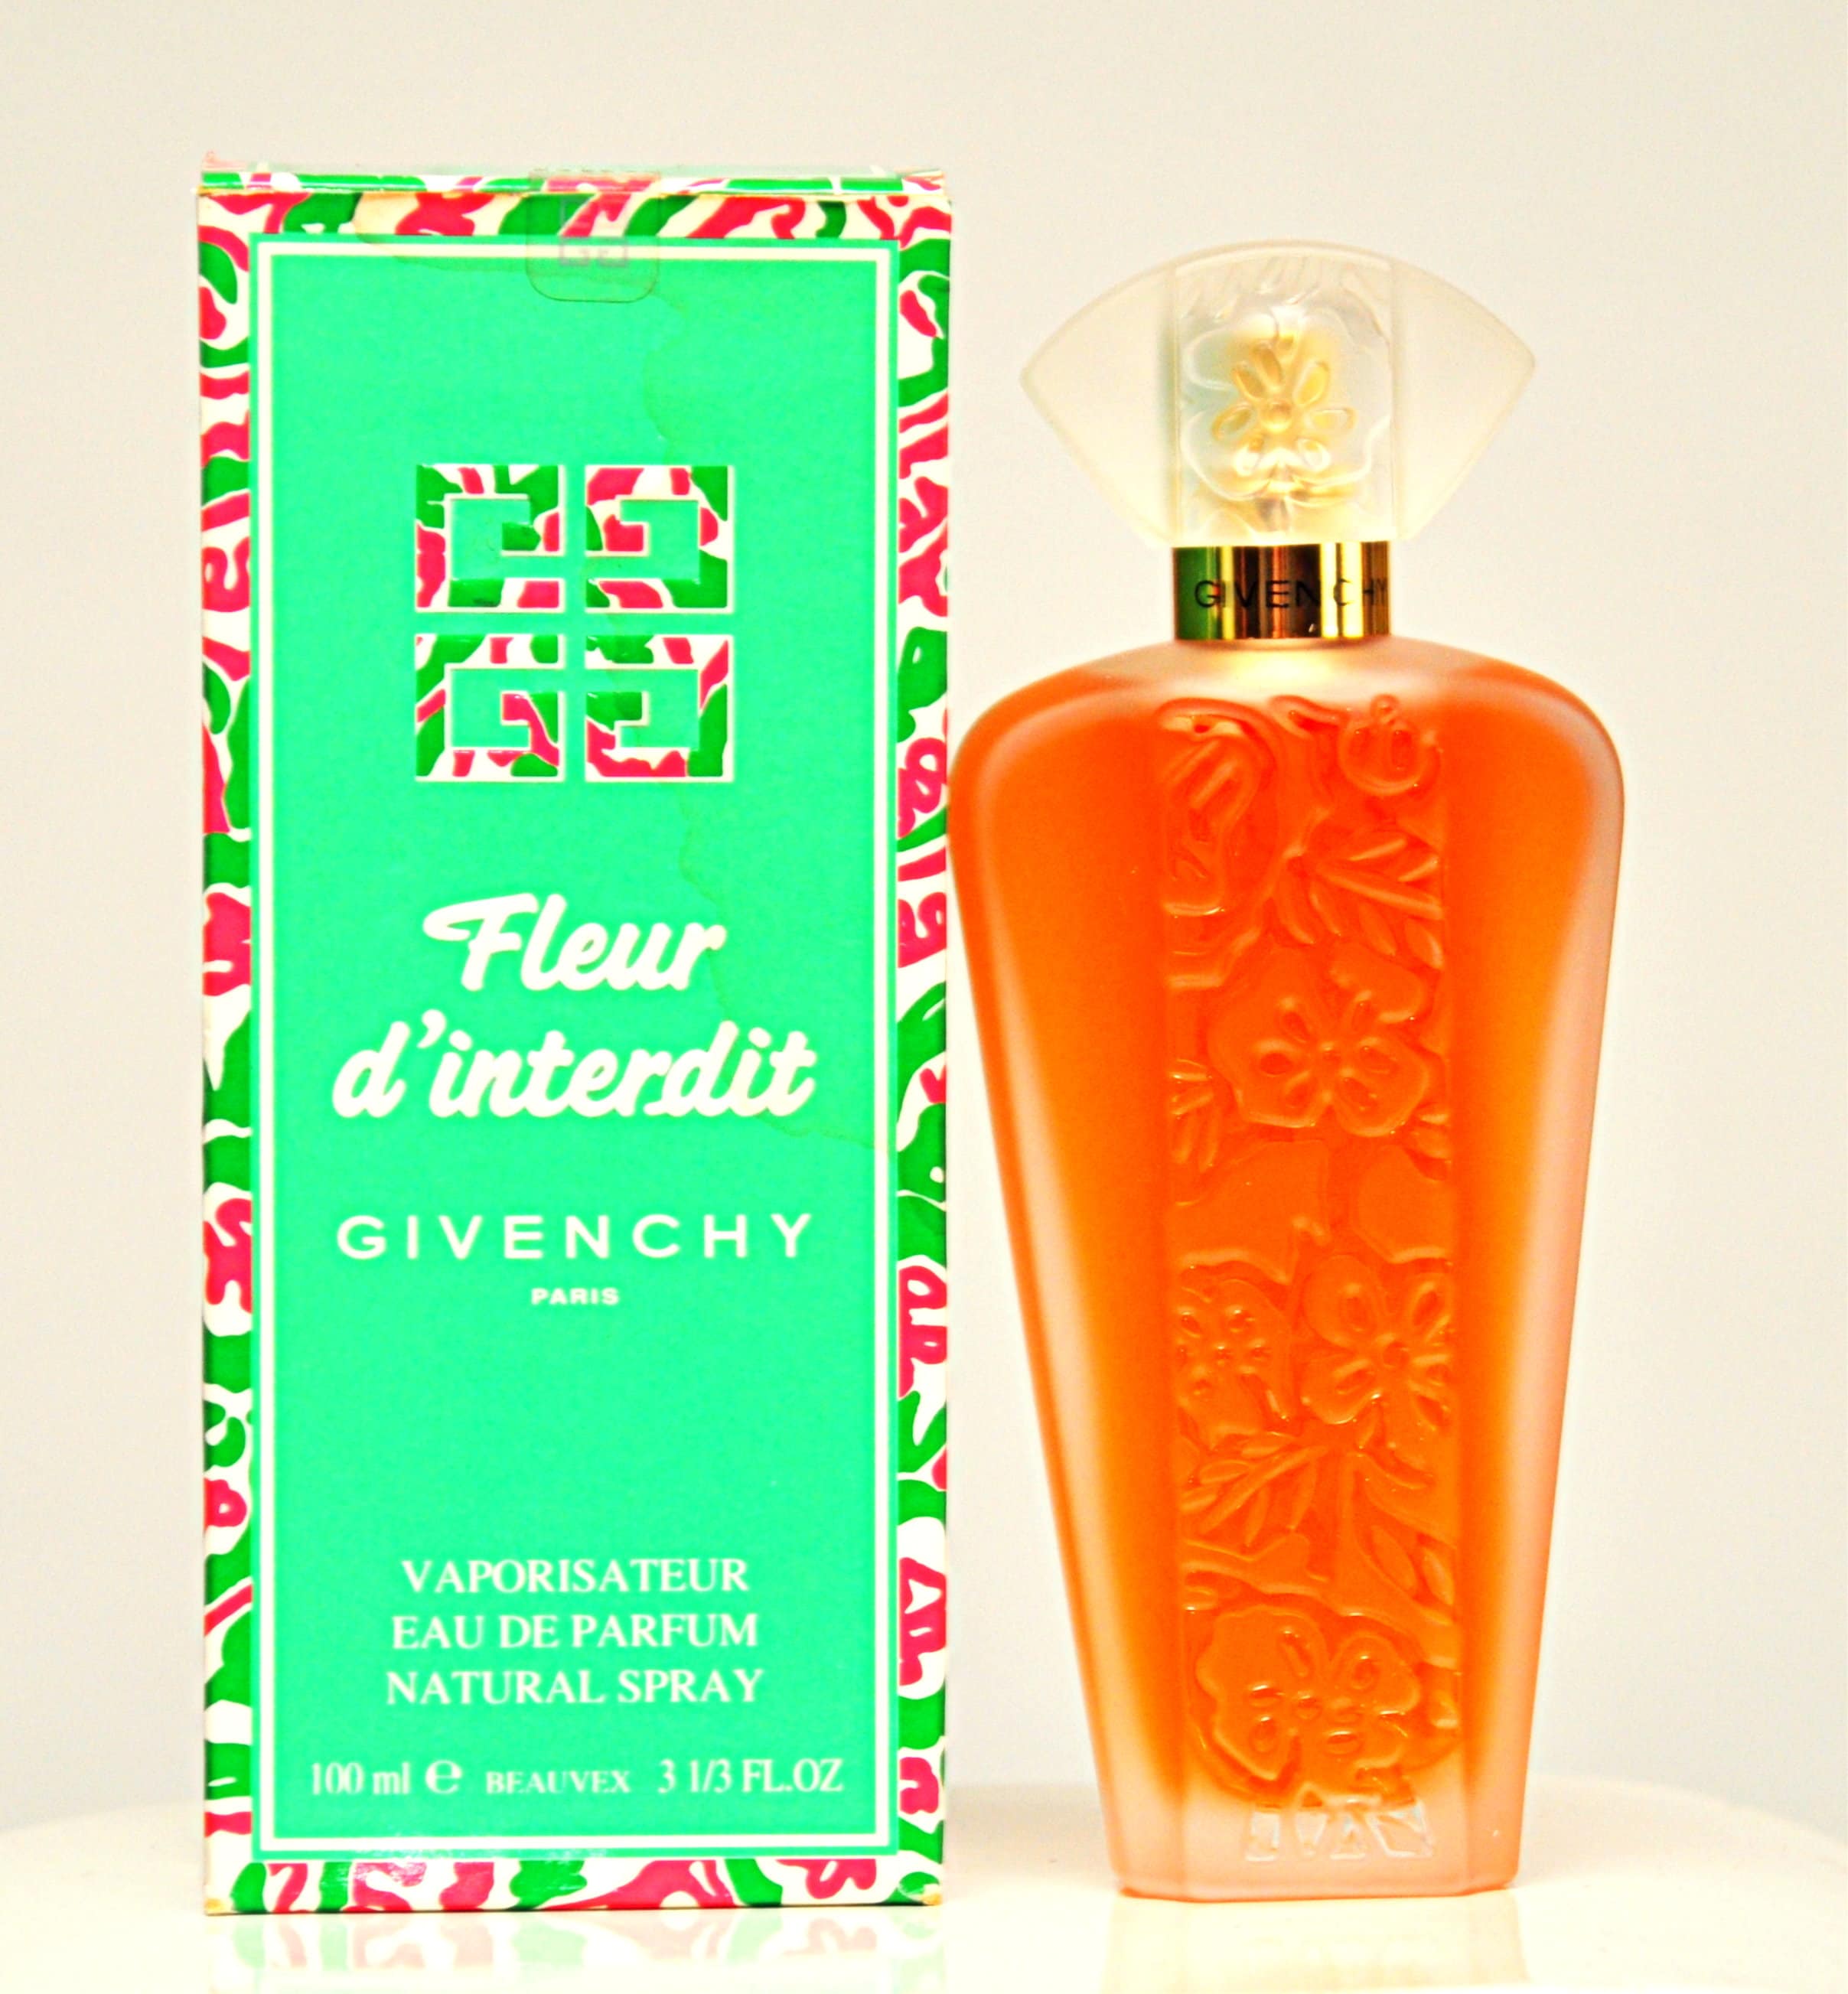 Givenchy Fleur D'interdit Eau De Parfum Edp 100ml 3.1/3 -  Canada